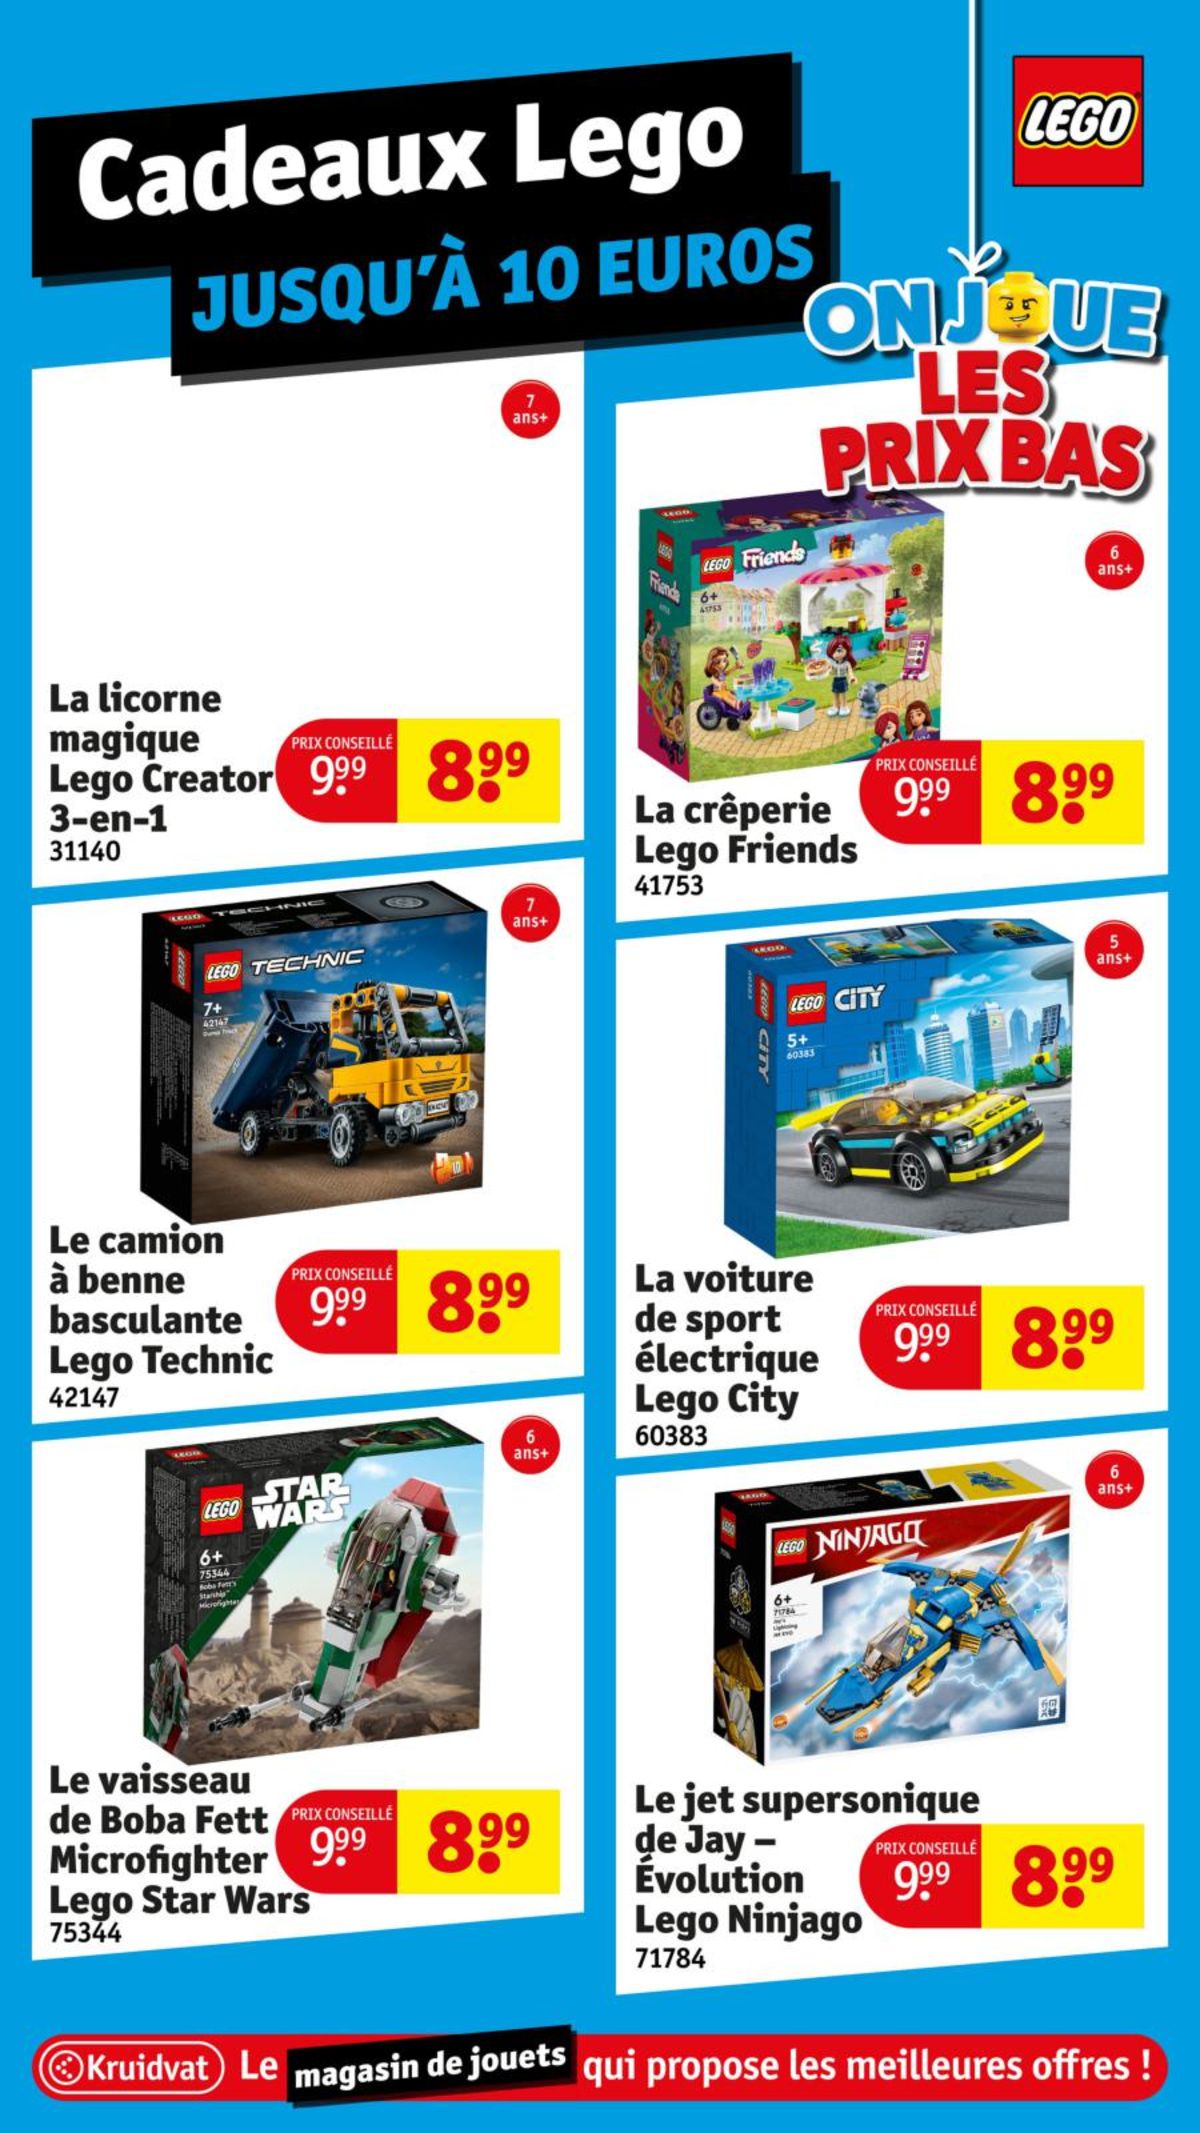 Catalogue Le magasin de jouets aux meilleures offres !, page 00003